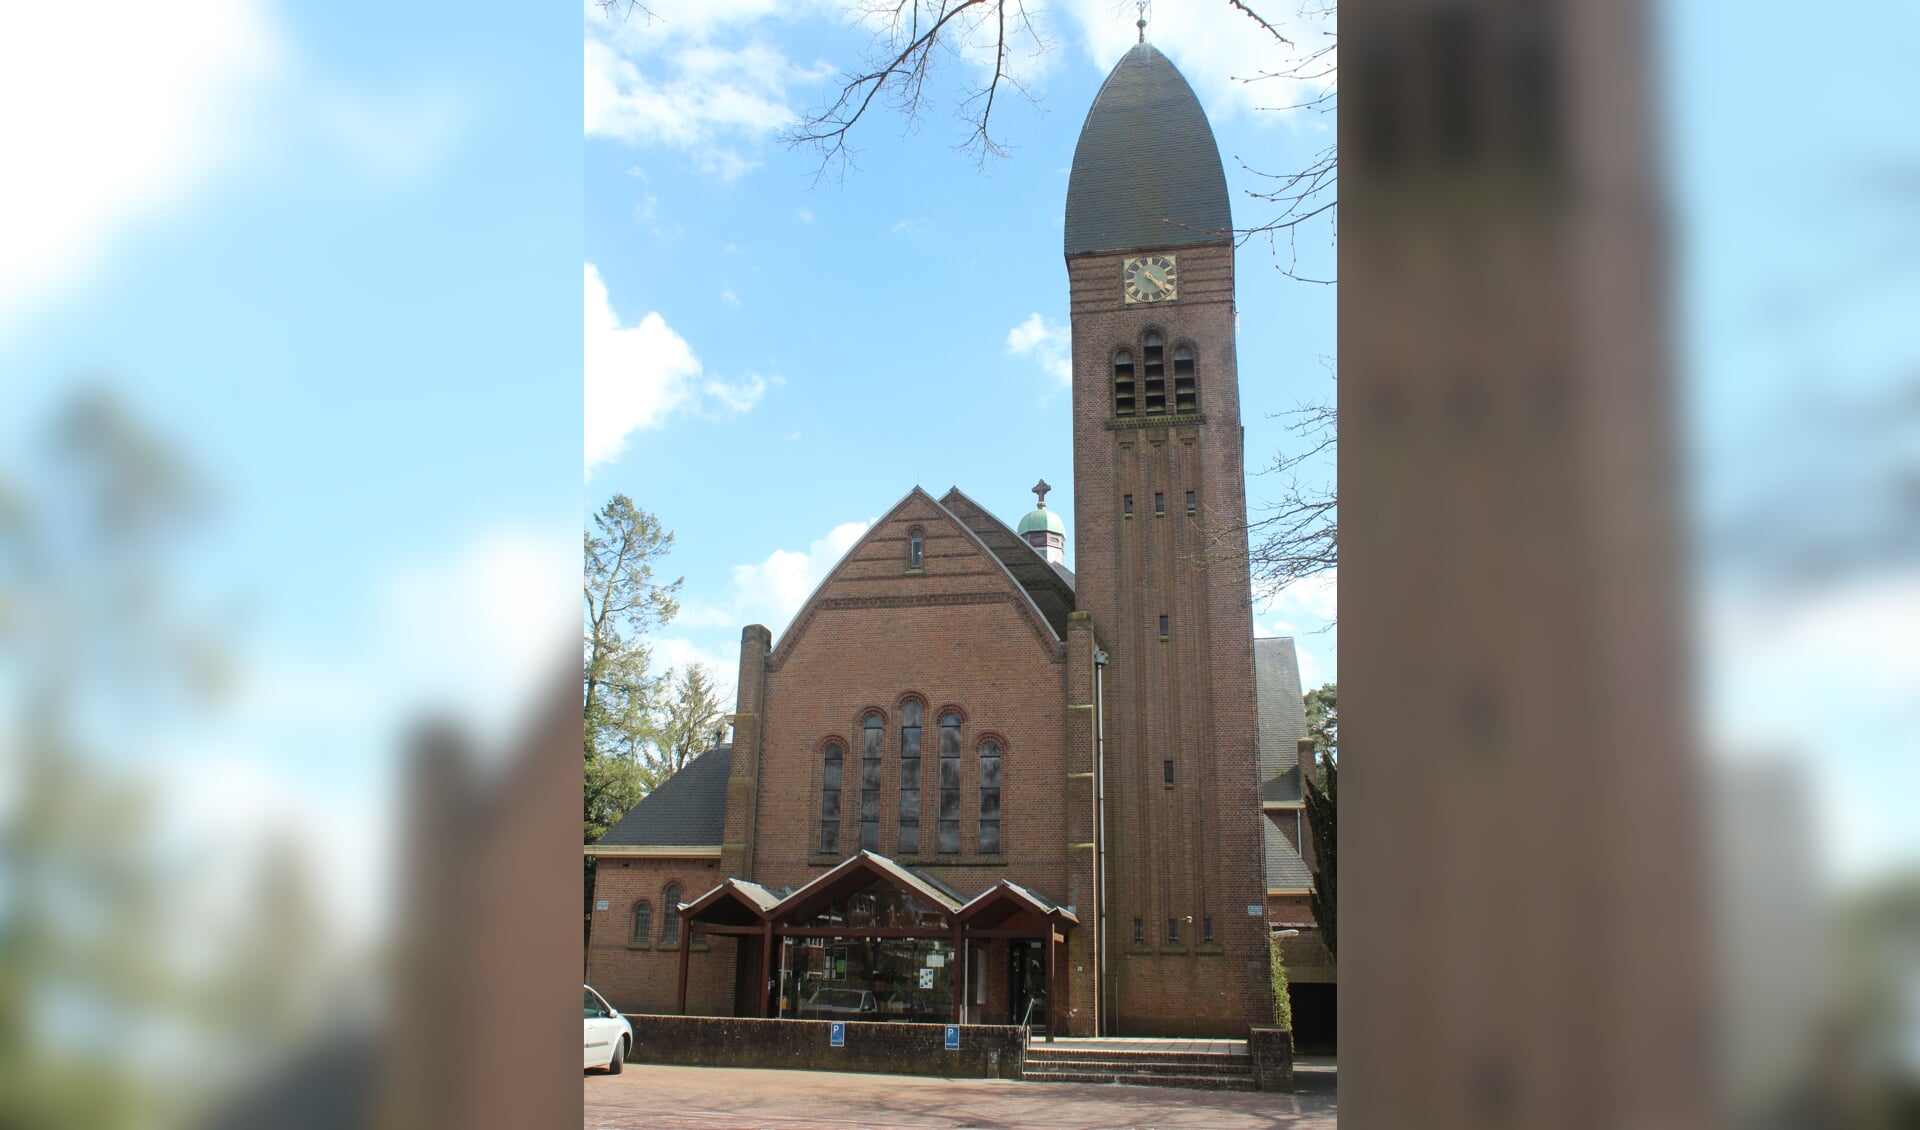  De deuren van de de OLV kerk aan de Gregoriuslaan 8 in Bilthoven staan zondag open voor een bijzondere viering.